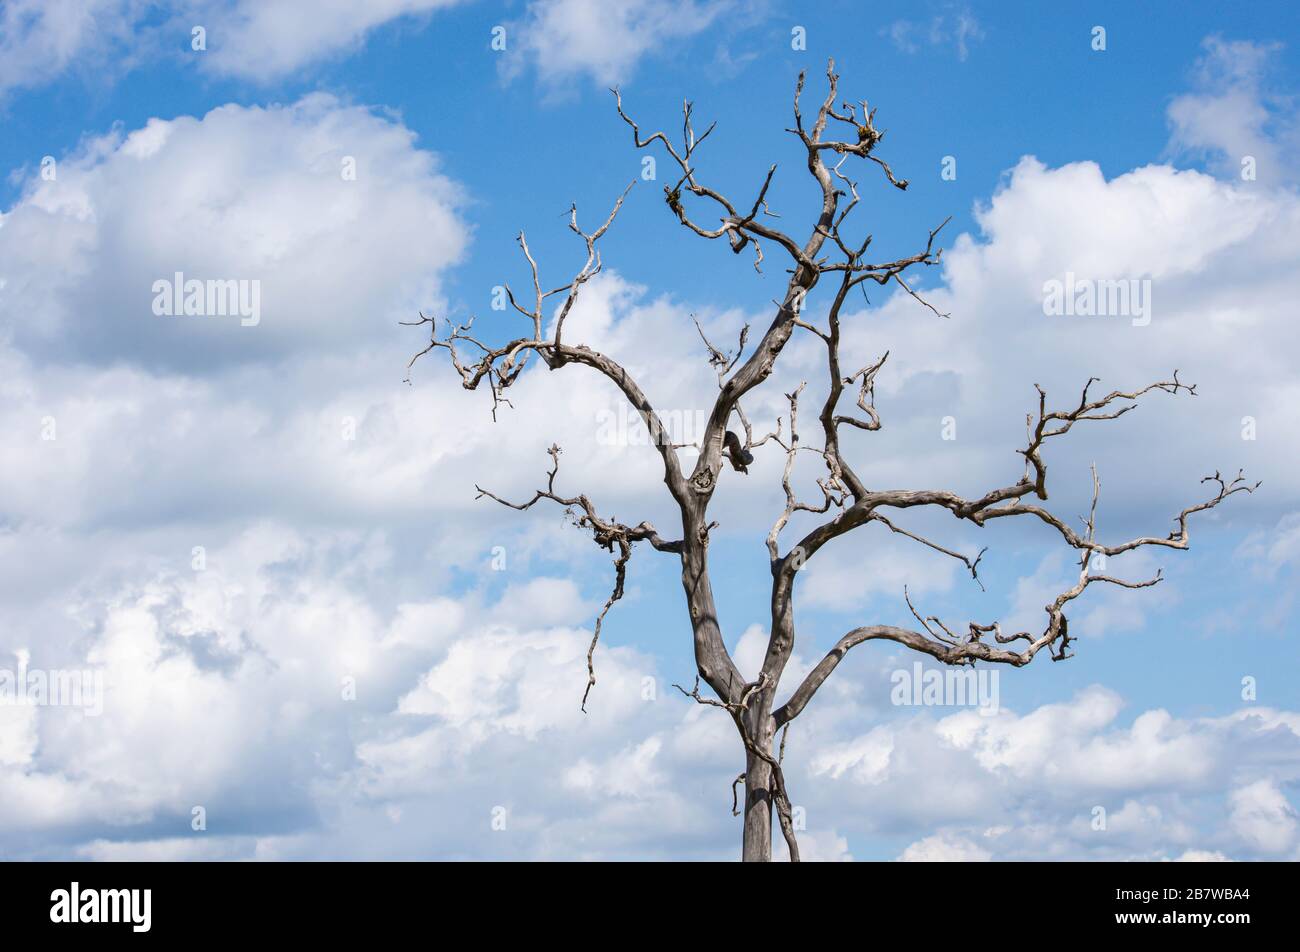 Albero secco senza foglie sfondo di cielo e nuvole Foto Stock